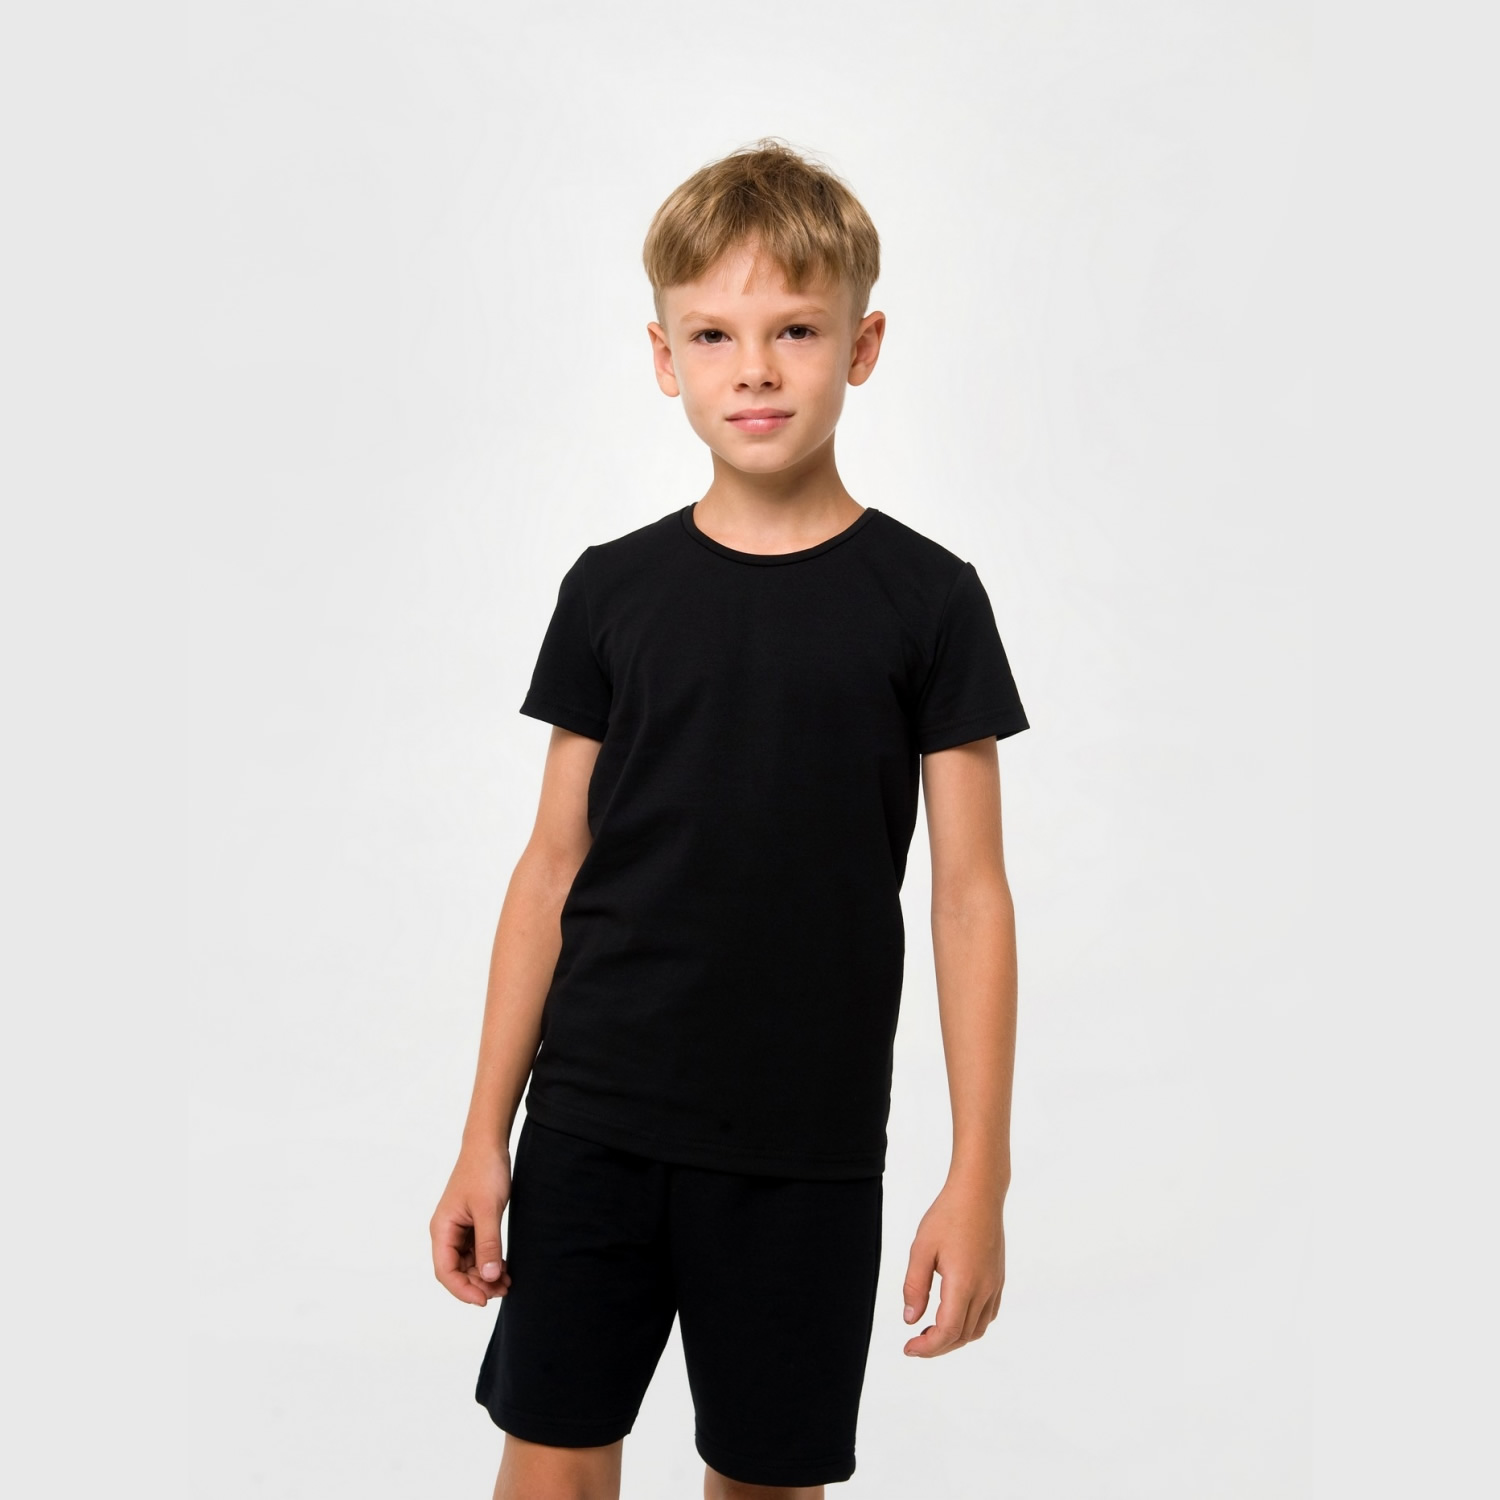 Дитяча футболка, чорна (110559, 110565, 110566), Smil (Смил)